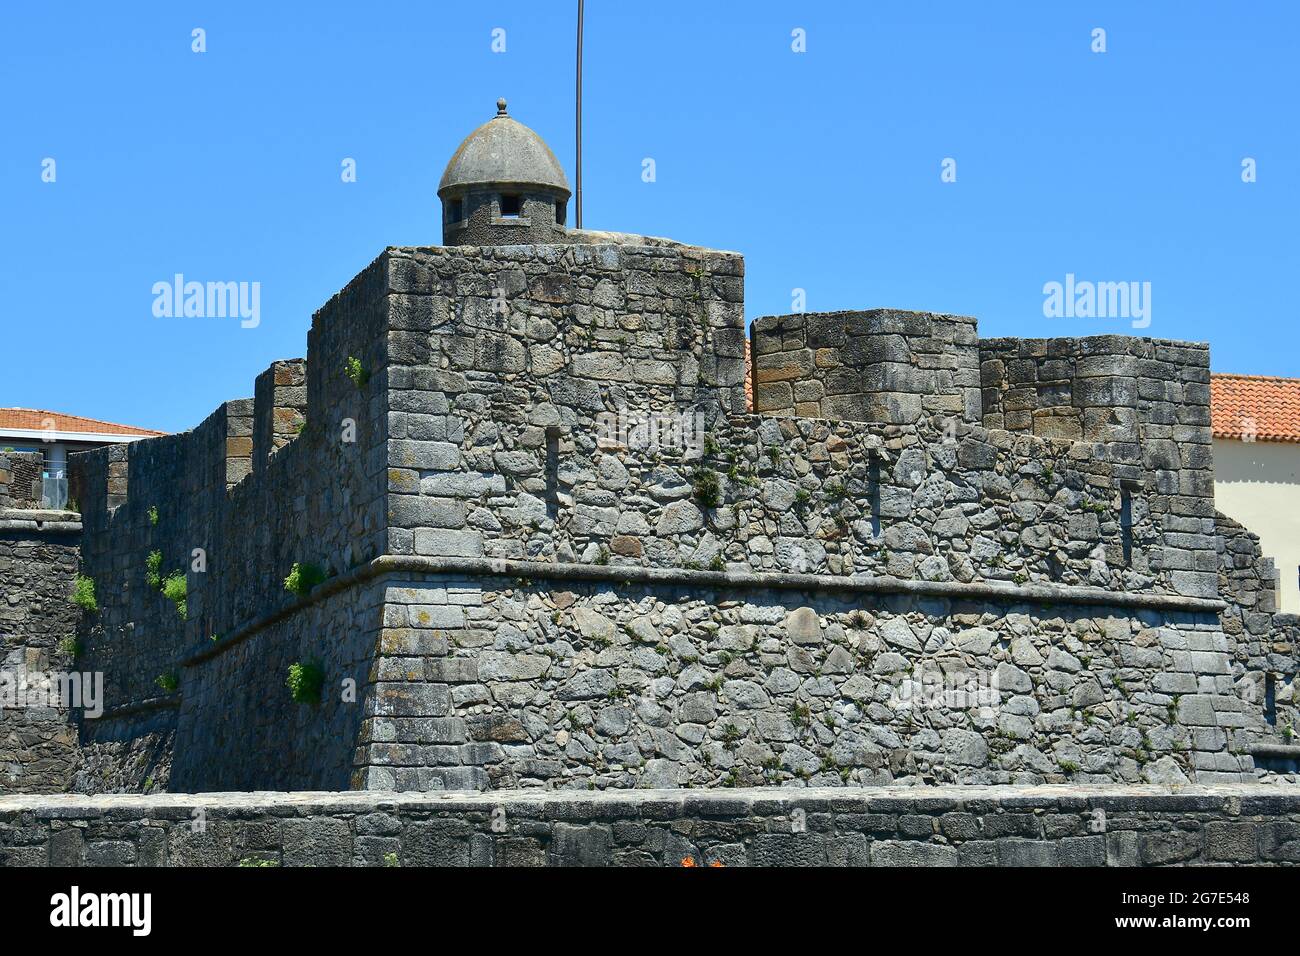 Fort of São João Baptista da Foz, Forte de São João Baptista da Foz, Porto, Portugal, Europe Stock Photo